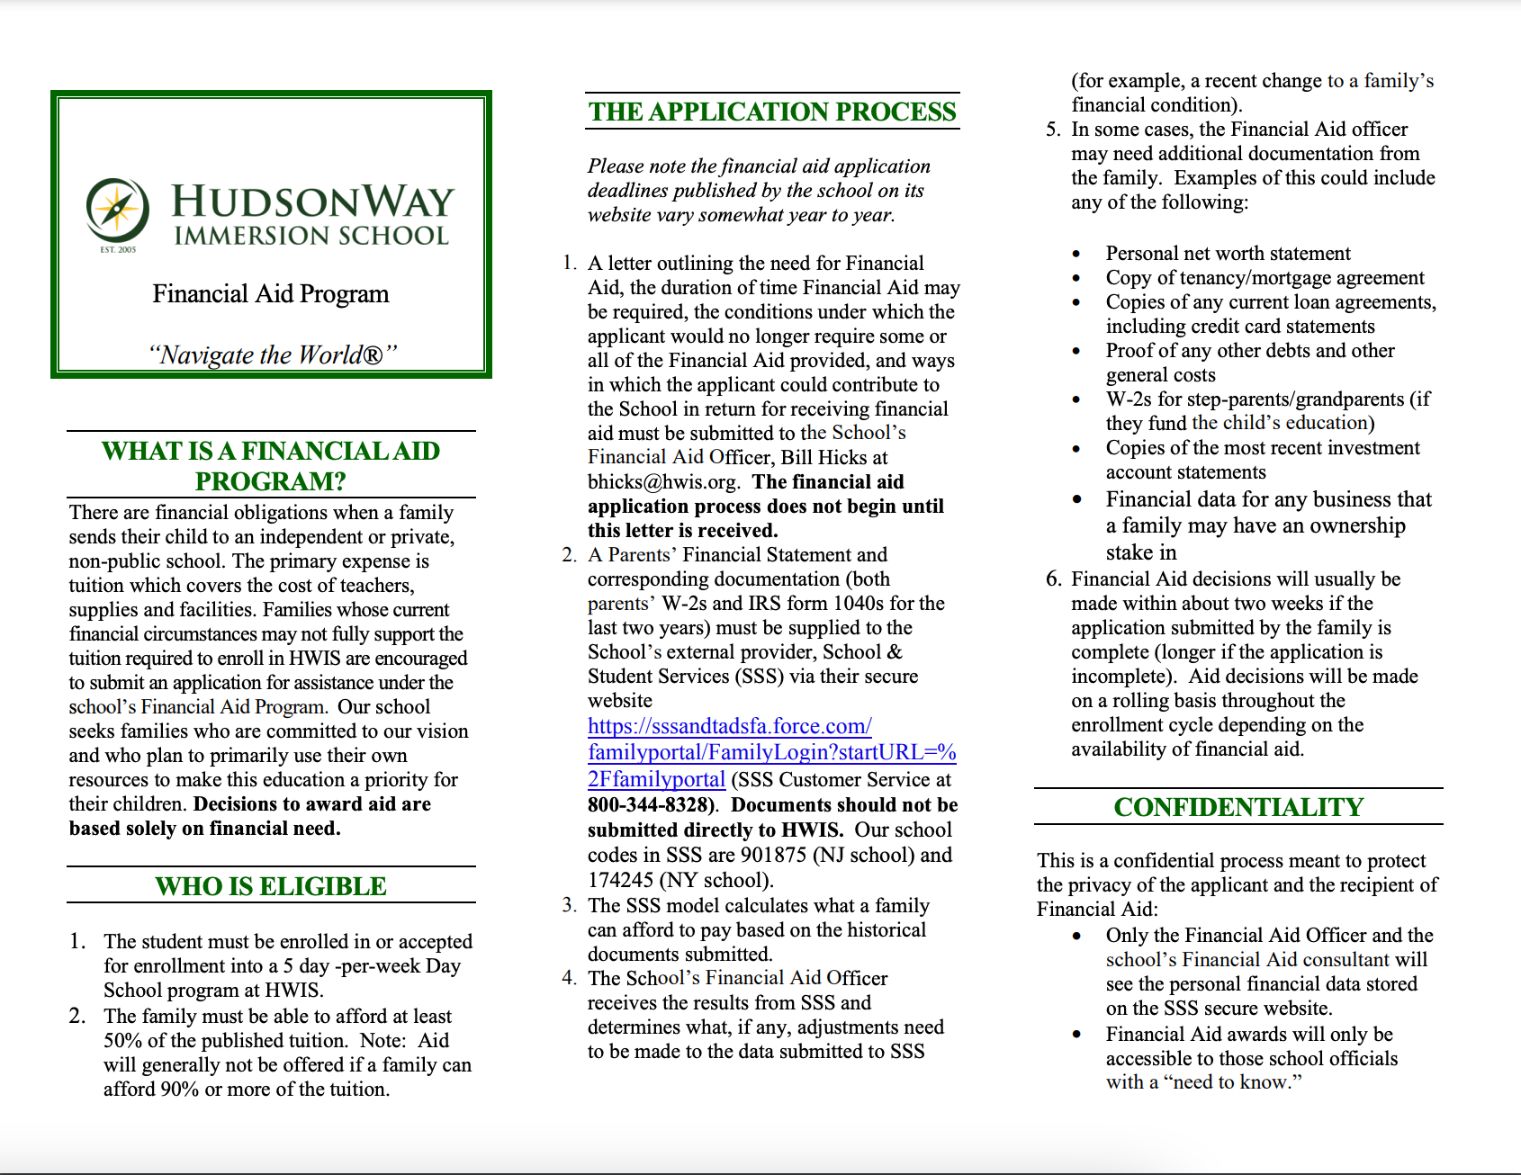 Financial Aid Program | HudsonWay Immersion School